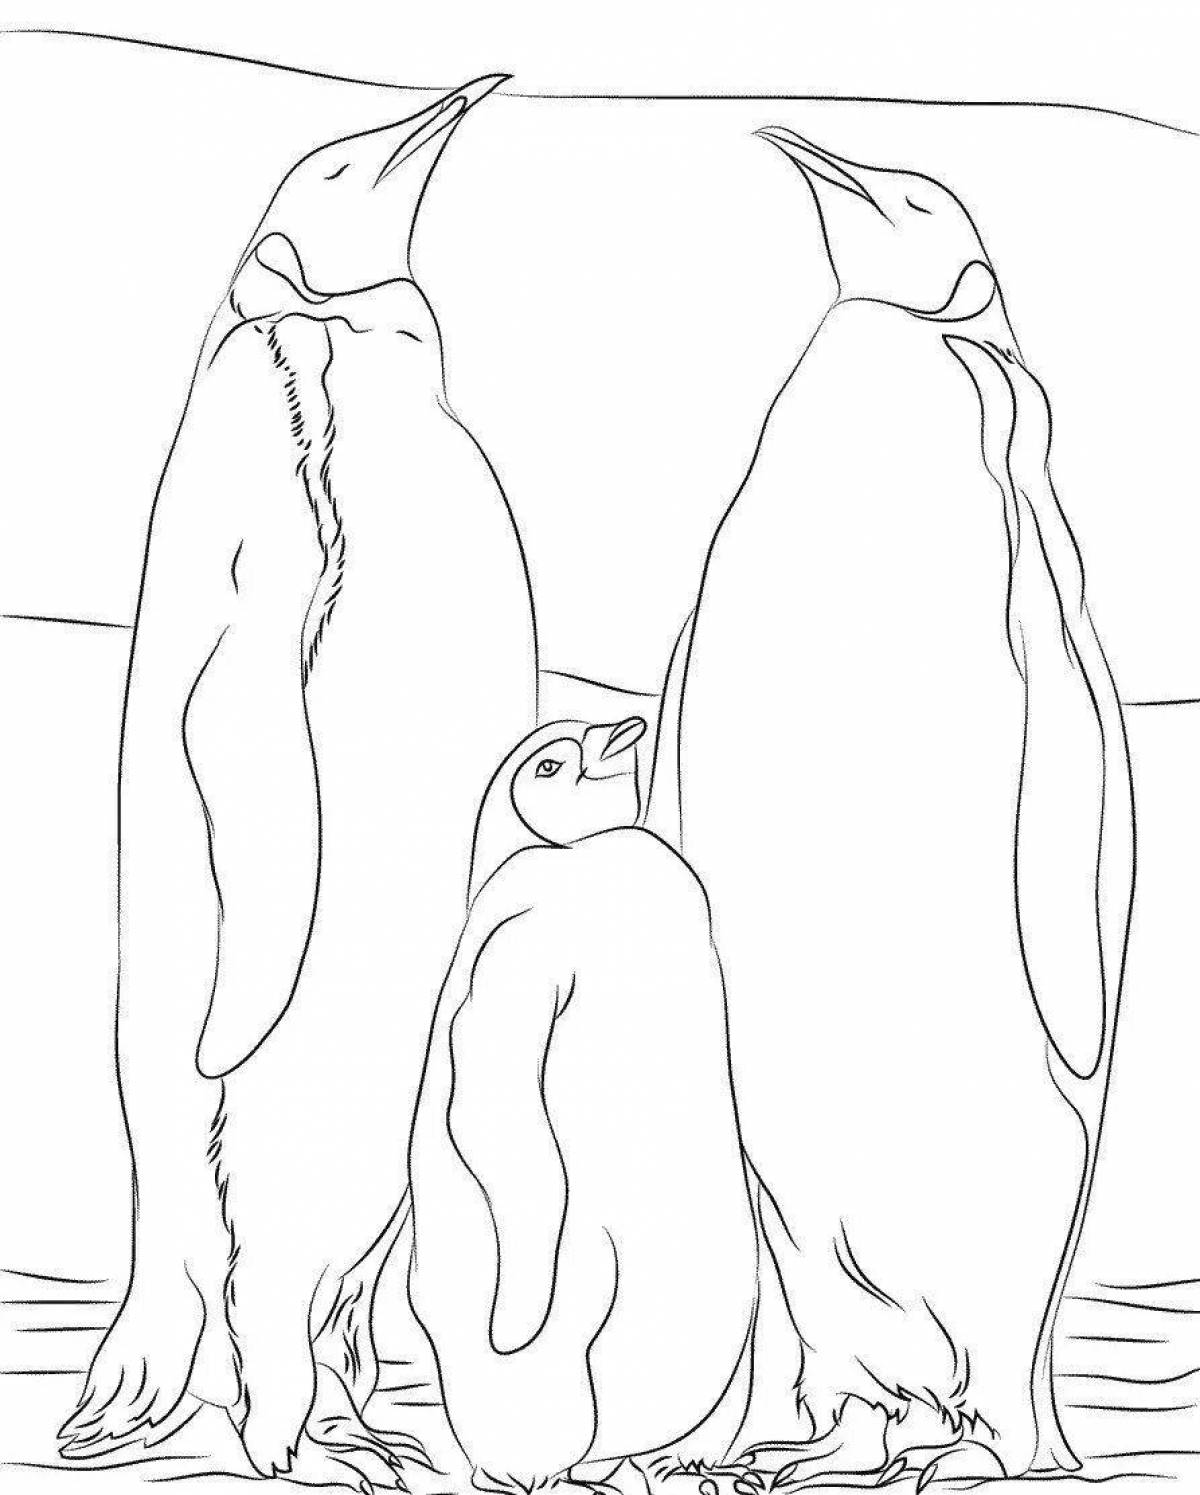 Черно-белые картинки пингвины для раскрашивания